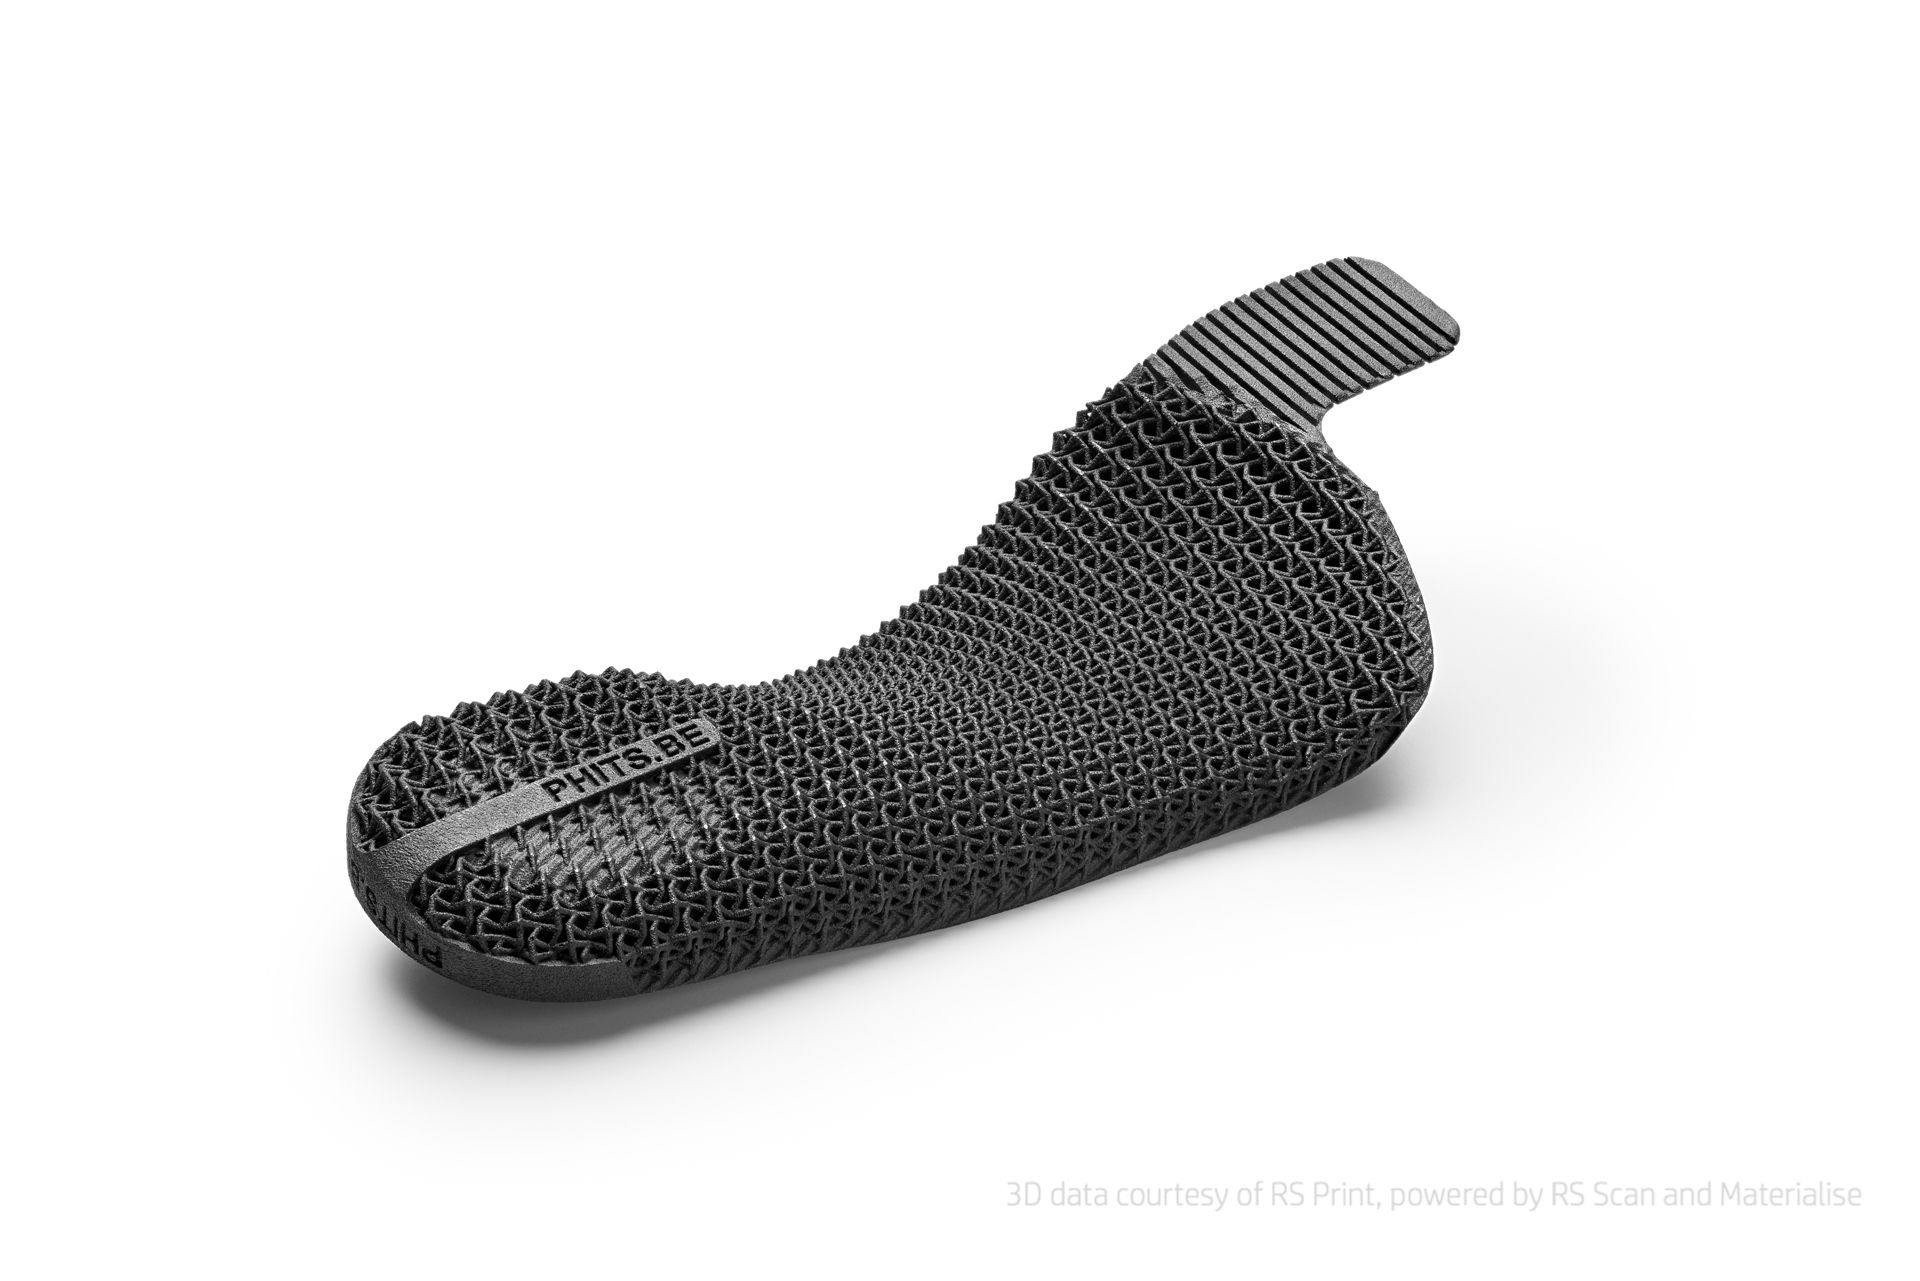 Las plantillas de los zapatos se personalizan gracias a la impresión 3D